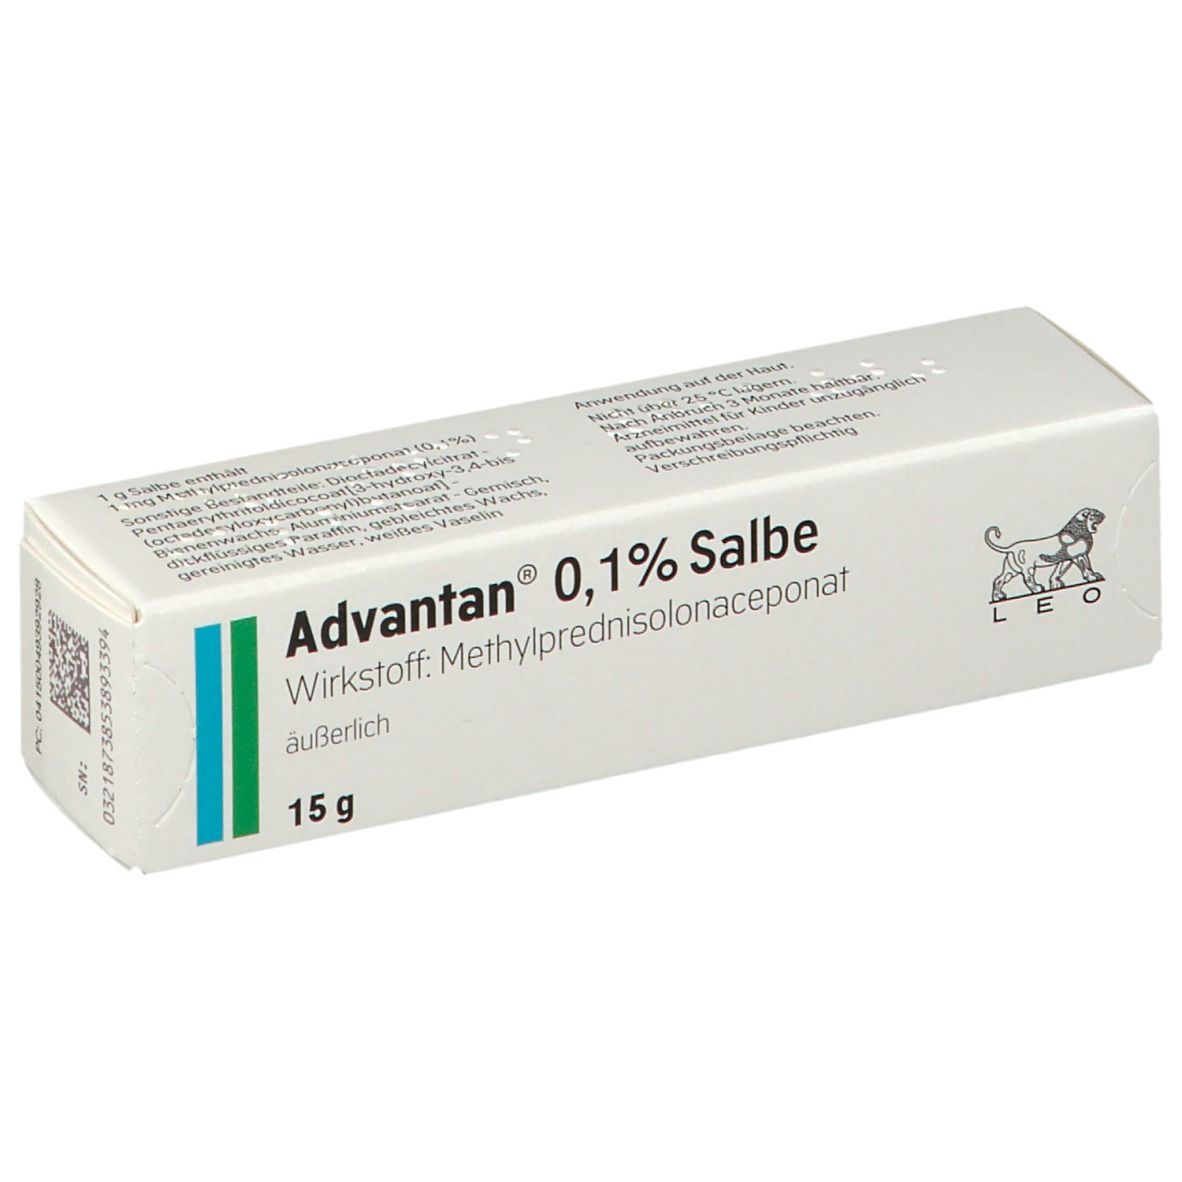 Advantan ® 0,1% Salbe.